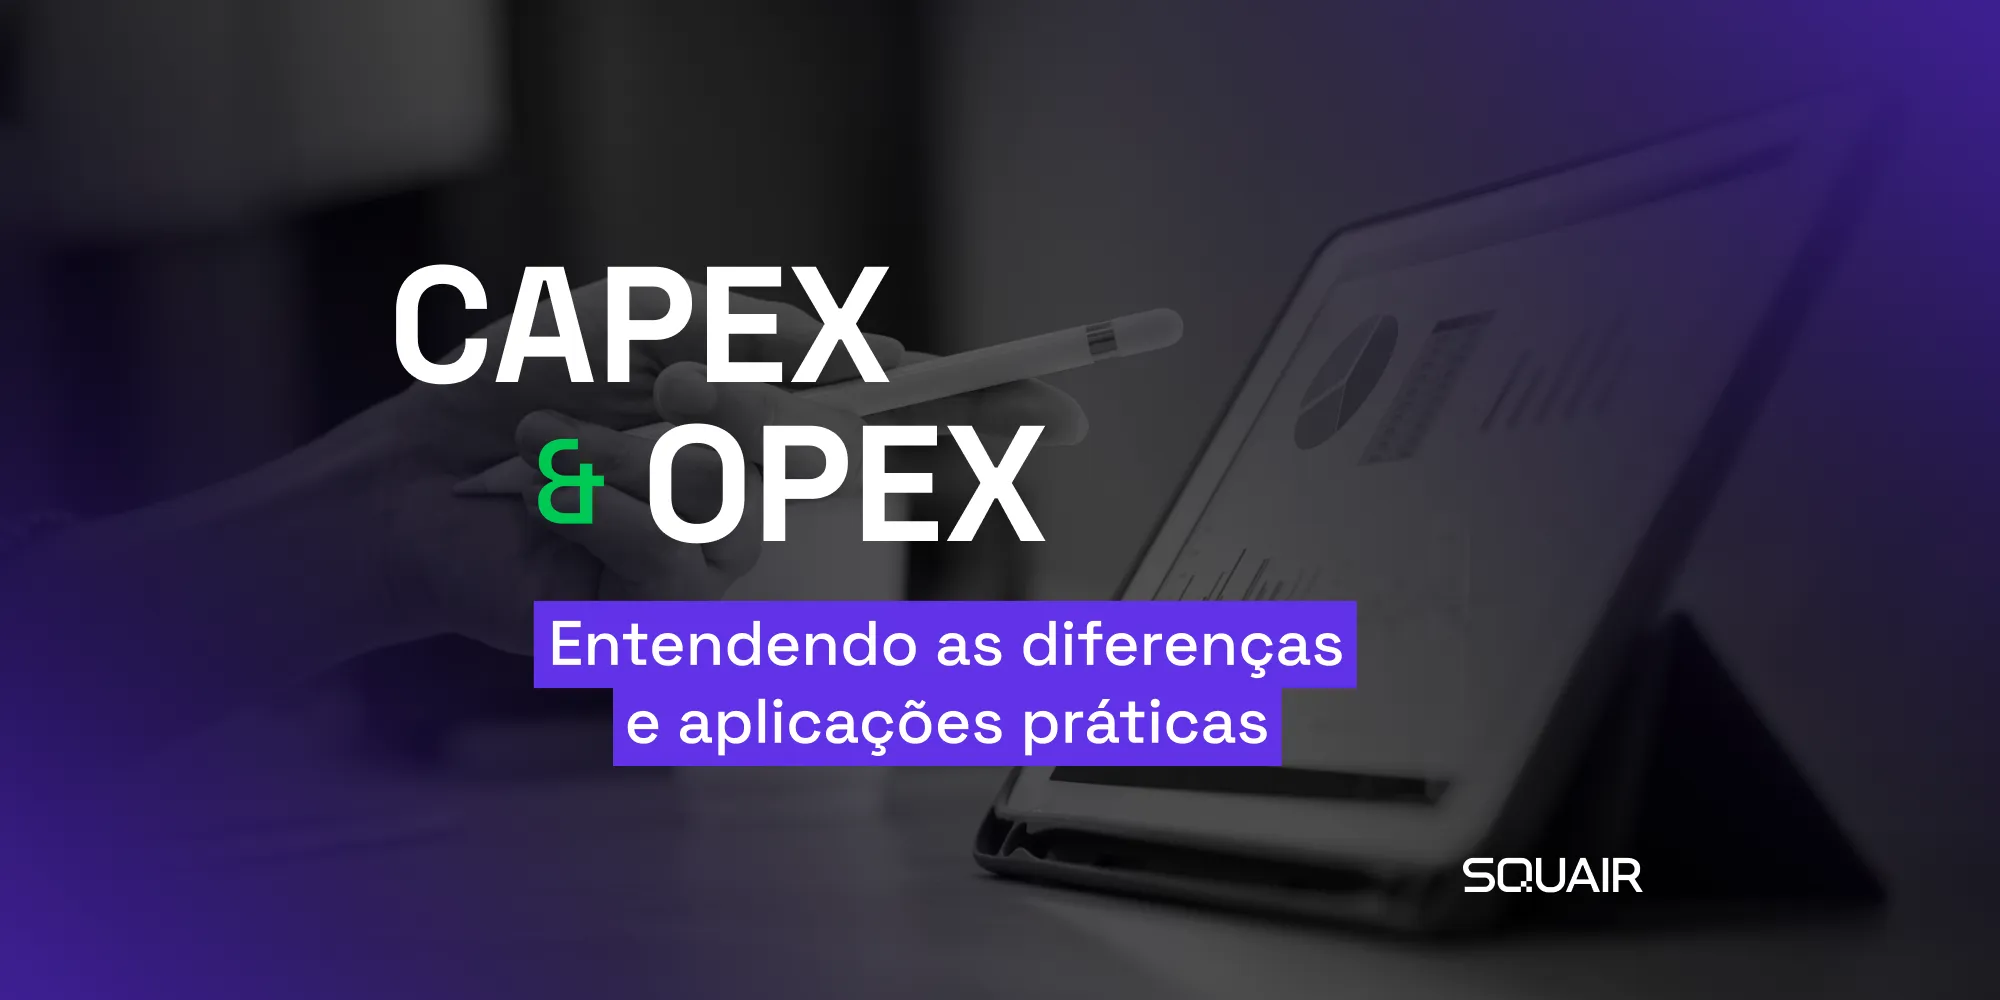 CAPEX e OPEX Diferenças 